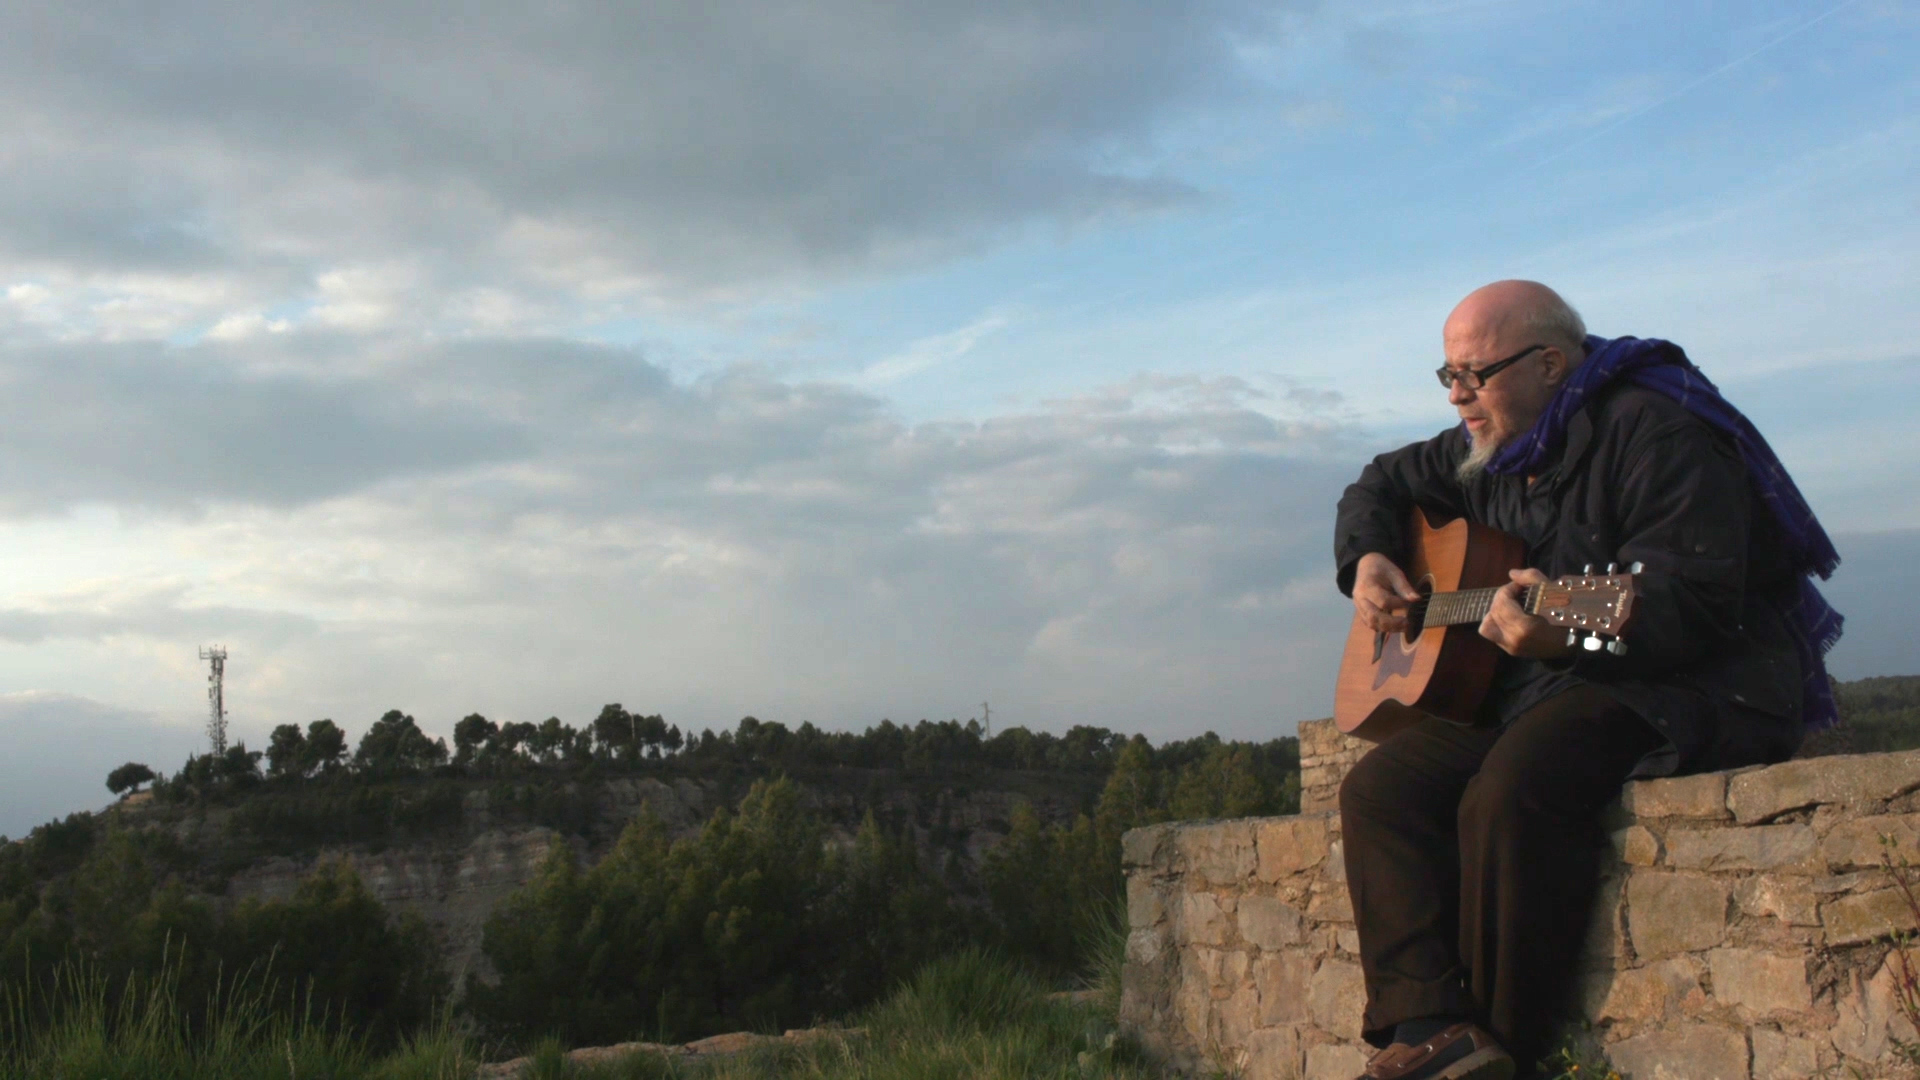 A les ruïnes d'un castell medieval, un home d'una setantena d'anys (Quico Palomar), amb poc cabell i una mica de barba, toca una cançó amb una guitarra. Al fons hi ha molts arbres i un cel amb núvols.